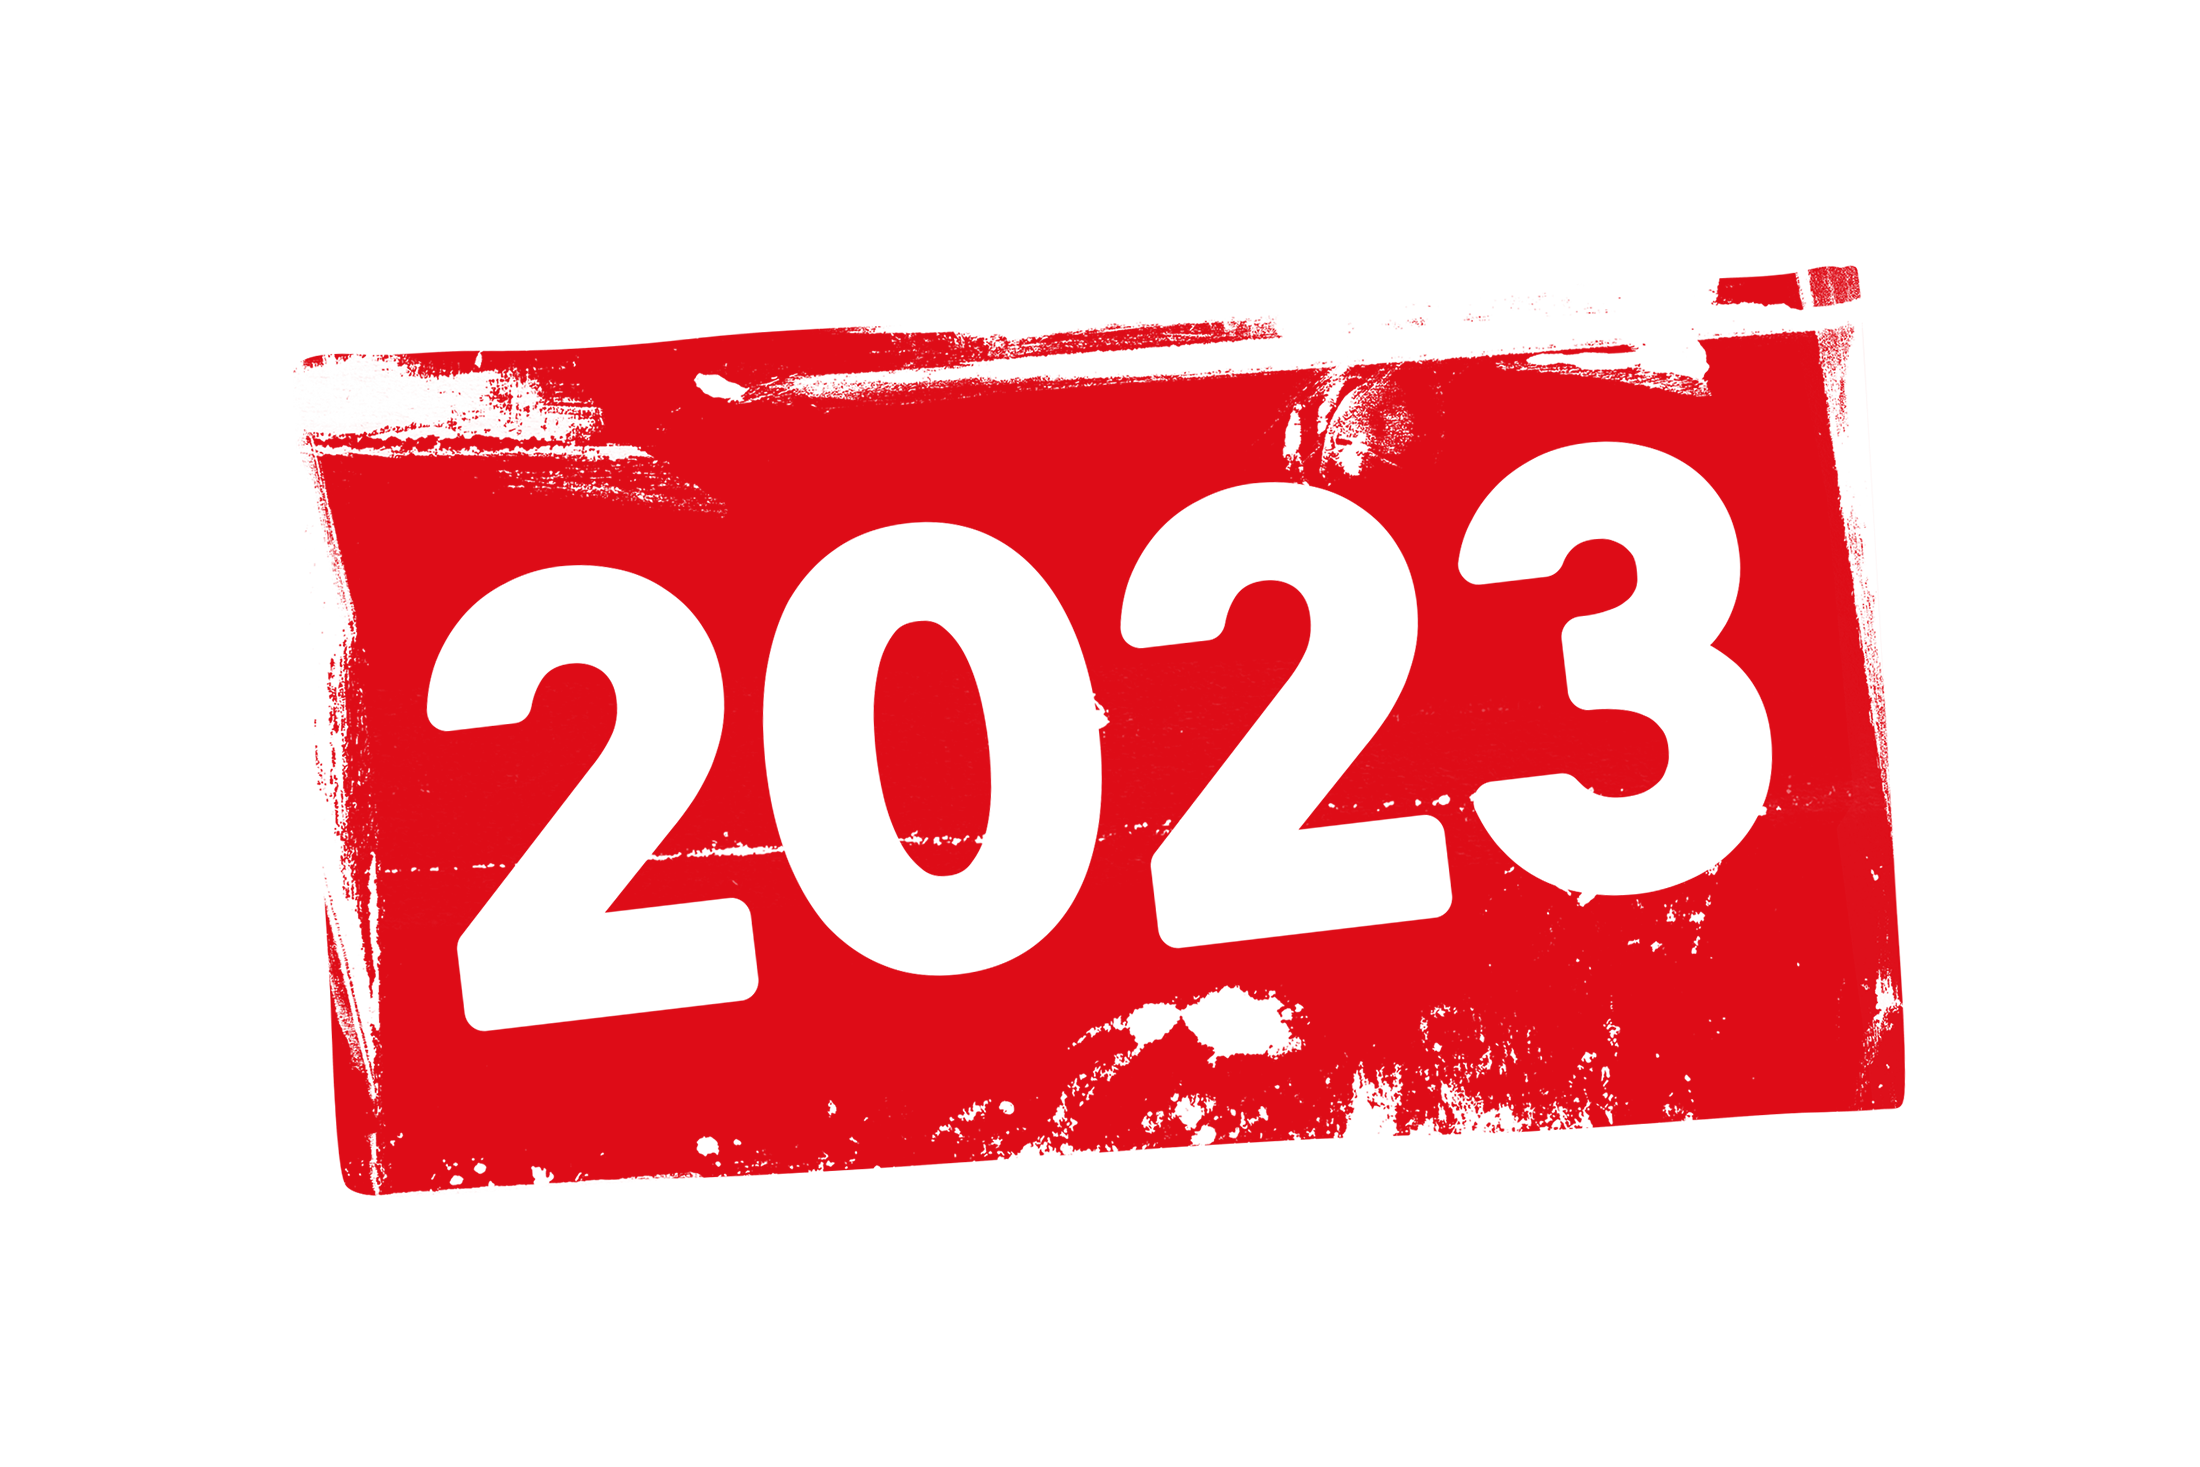 2023 PNG Transparent Background Images Pngteam